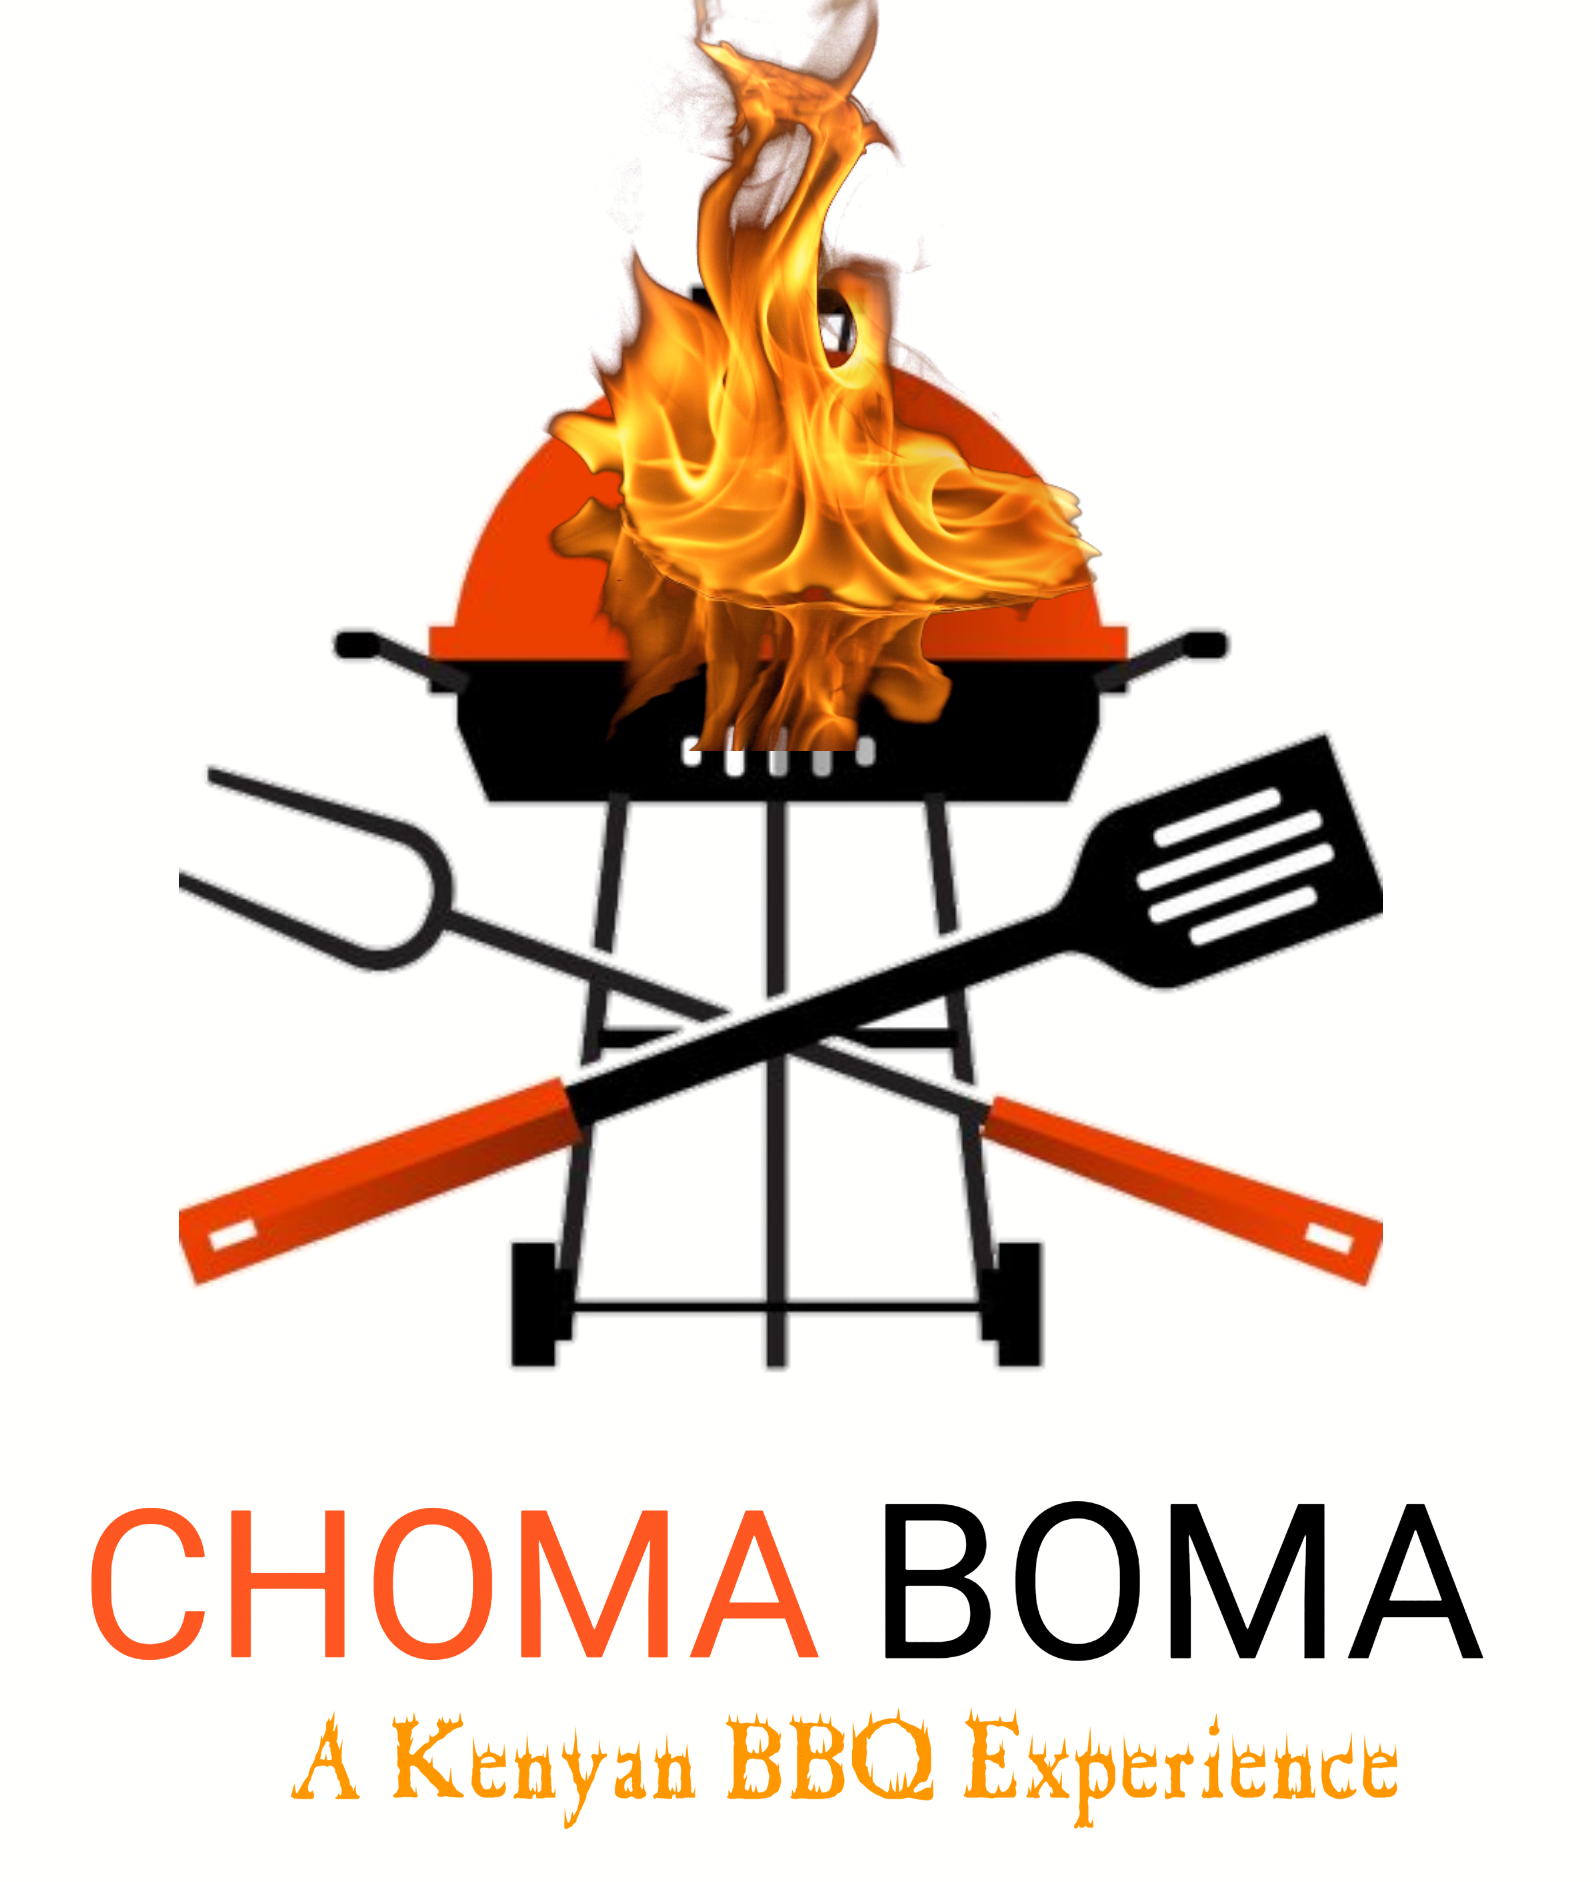 Choma Boma